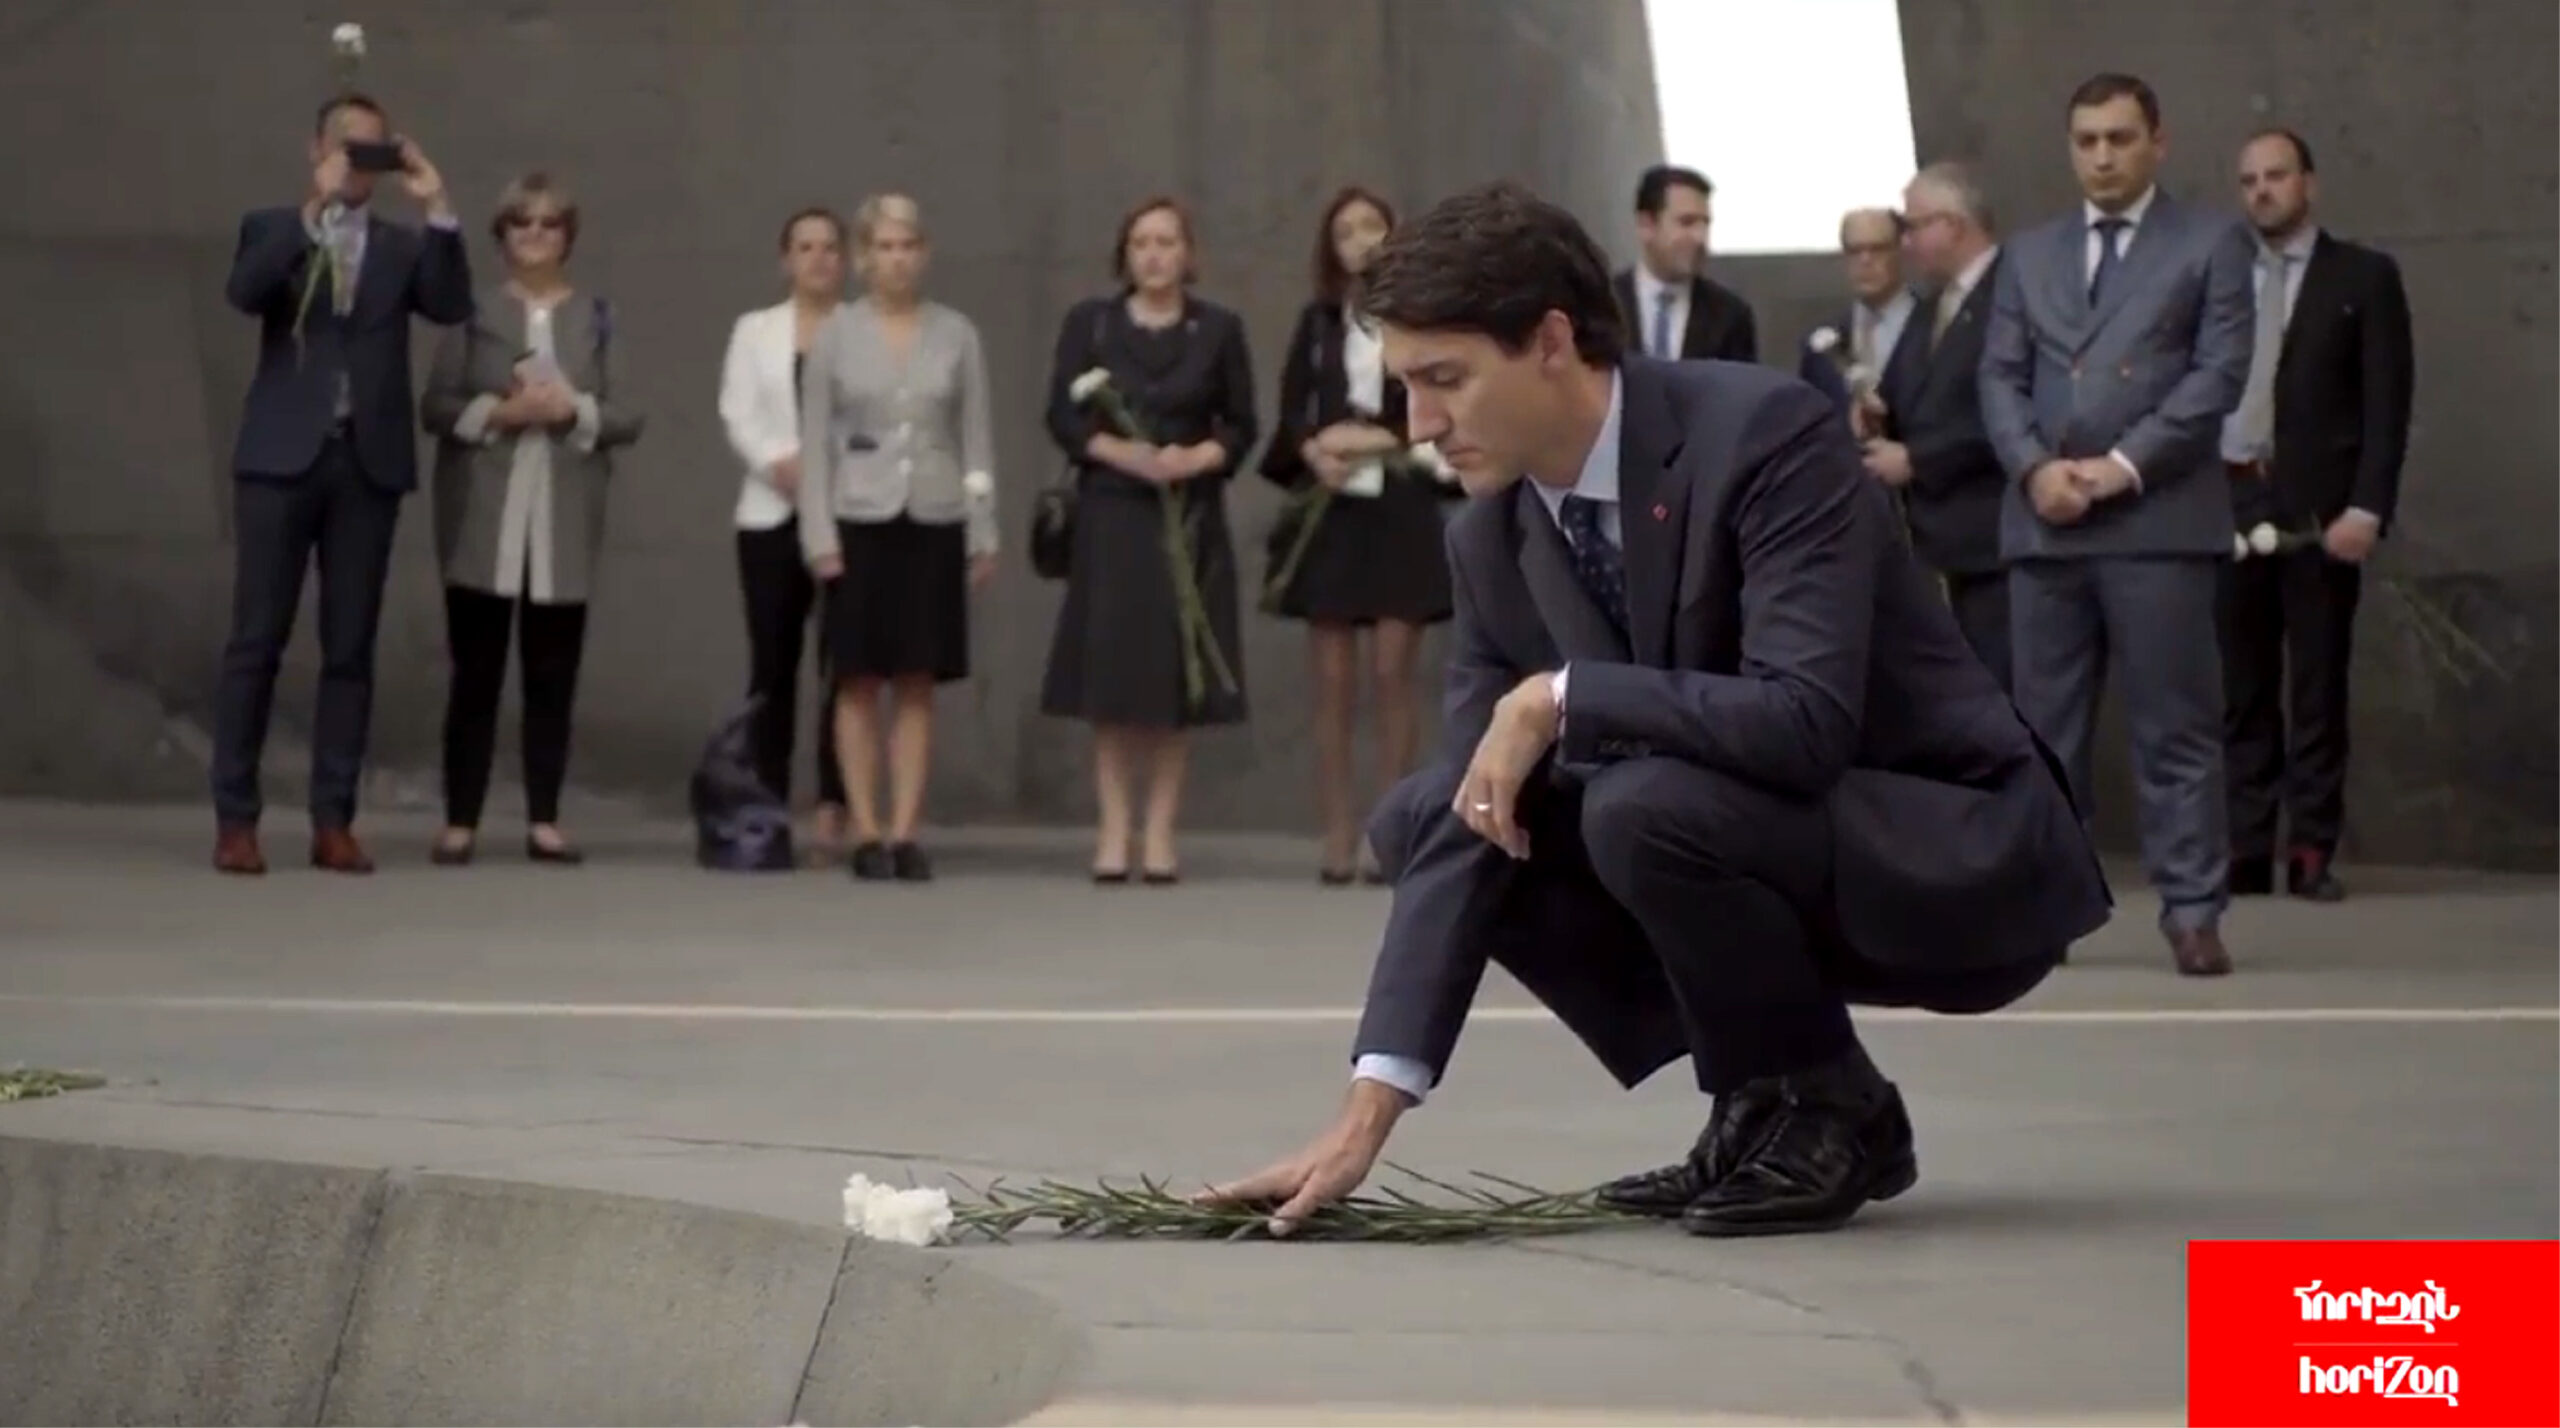 Kanada Başbakanı: "Ermeni Soykırımı'nın kurbanların anılarını hatırlamalı ve onurlandırmalıyız"